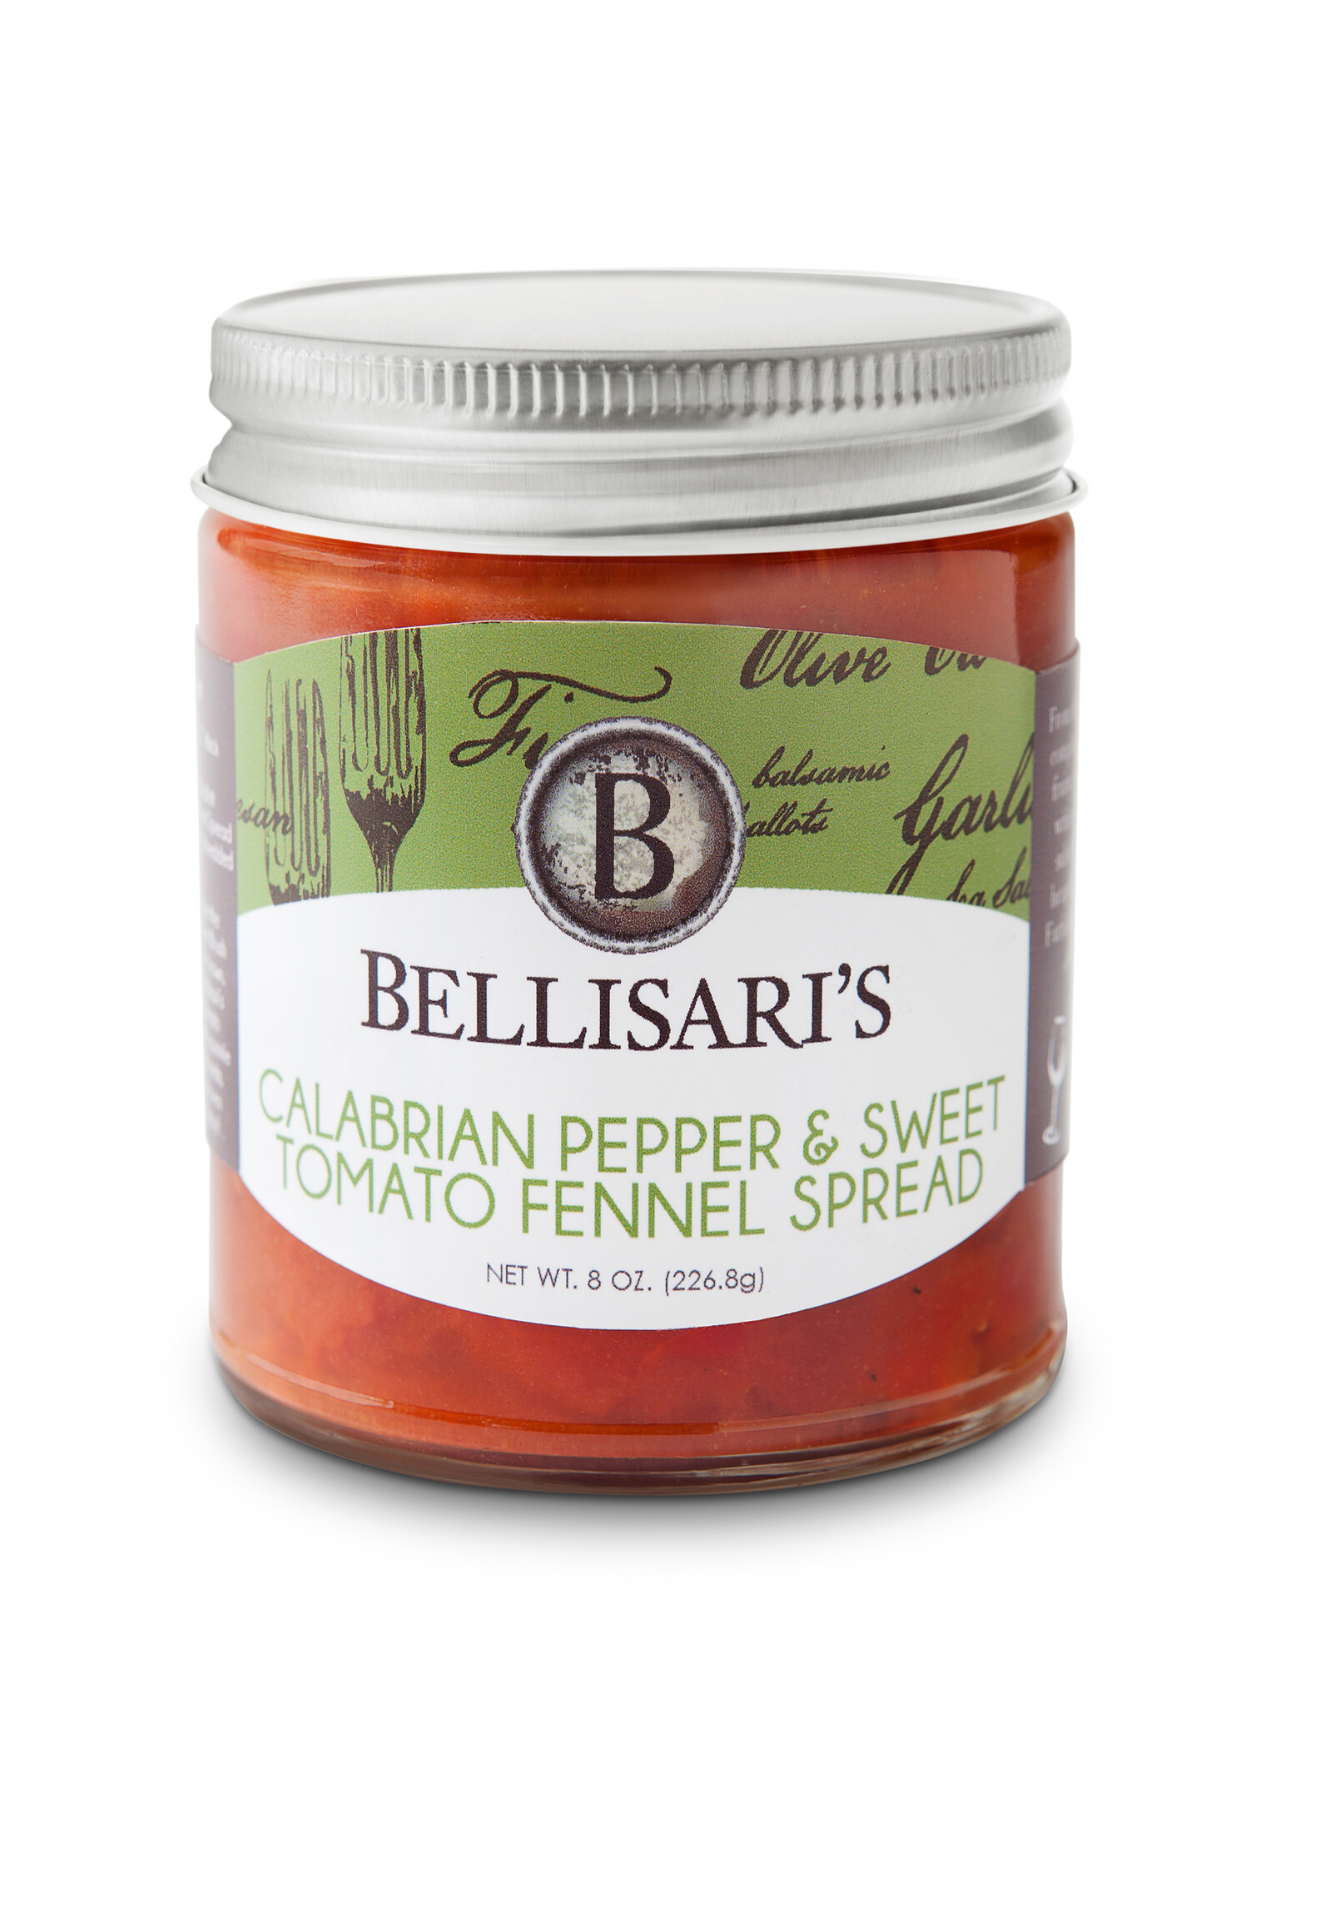 Bellisari's Calabrian Pepper & Sweet Tomato Fennel Spread